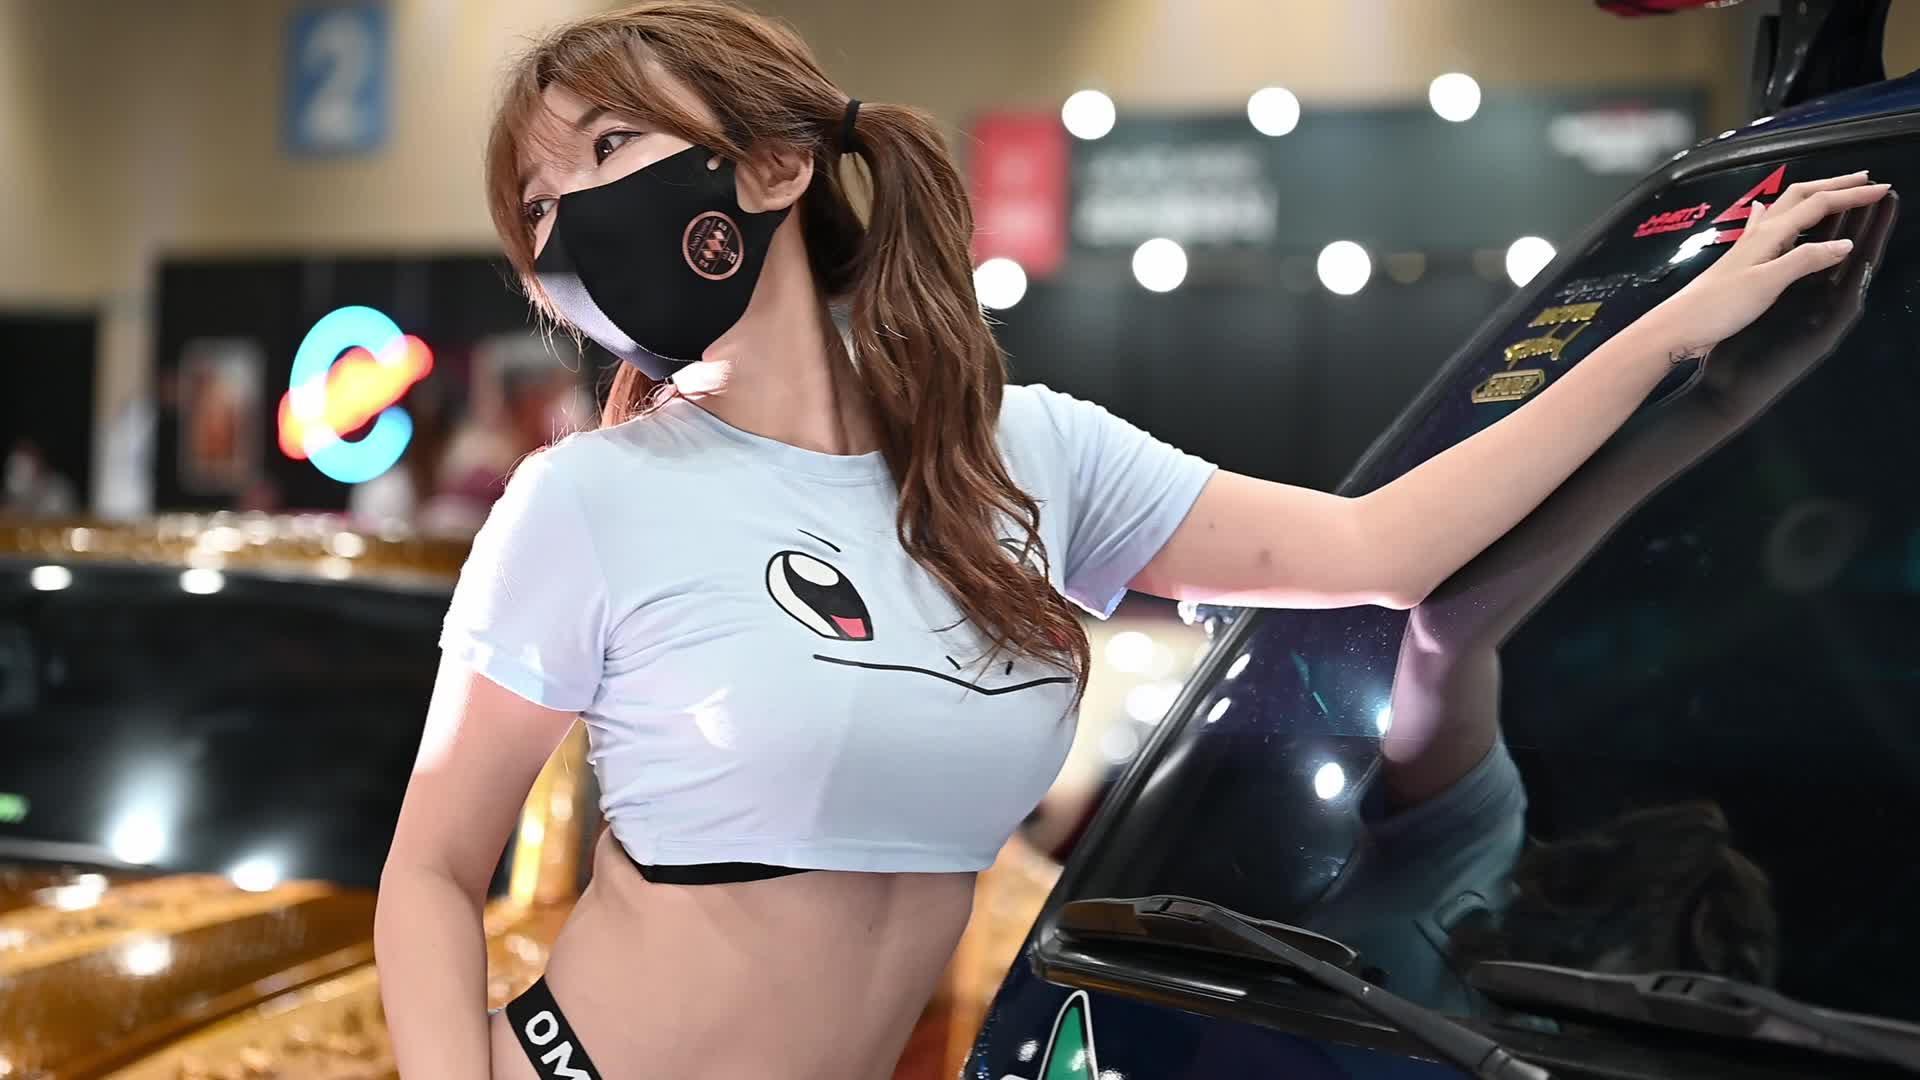 모델 도희 Dohee 2021 서울오토살롱위크 Auto salon week RACING MODEL KOREA RACE QUEEN 韓国 レースクイーン gridgirl